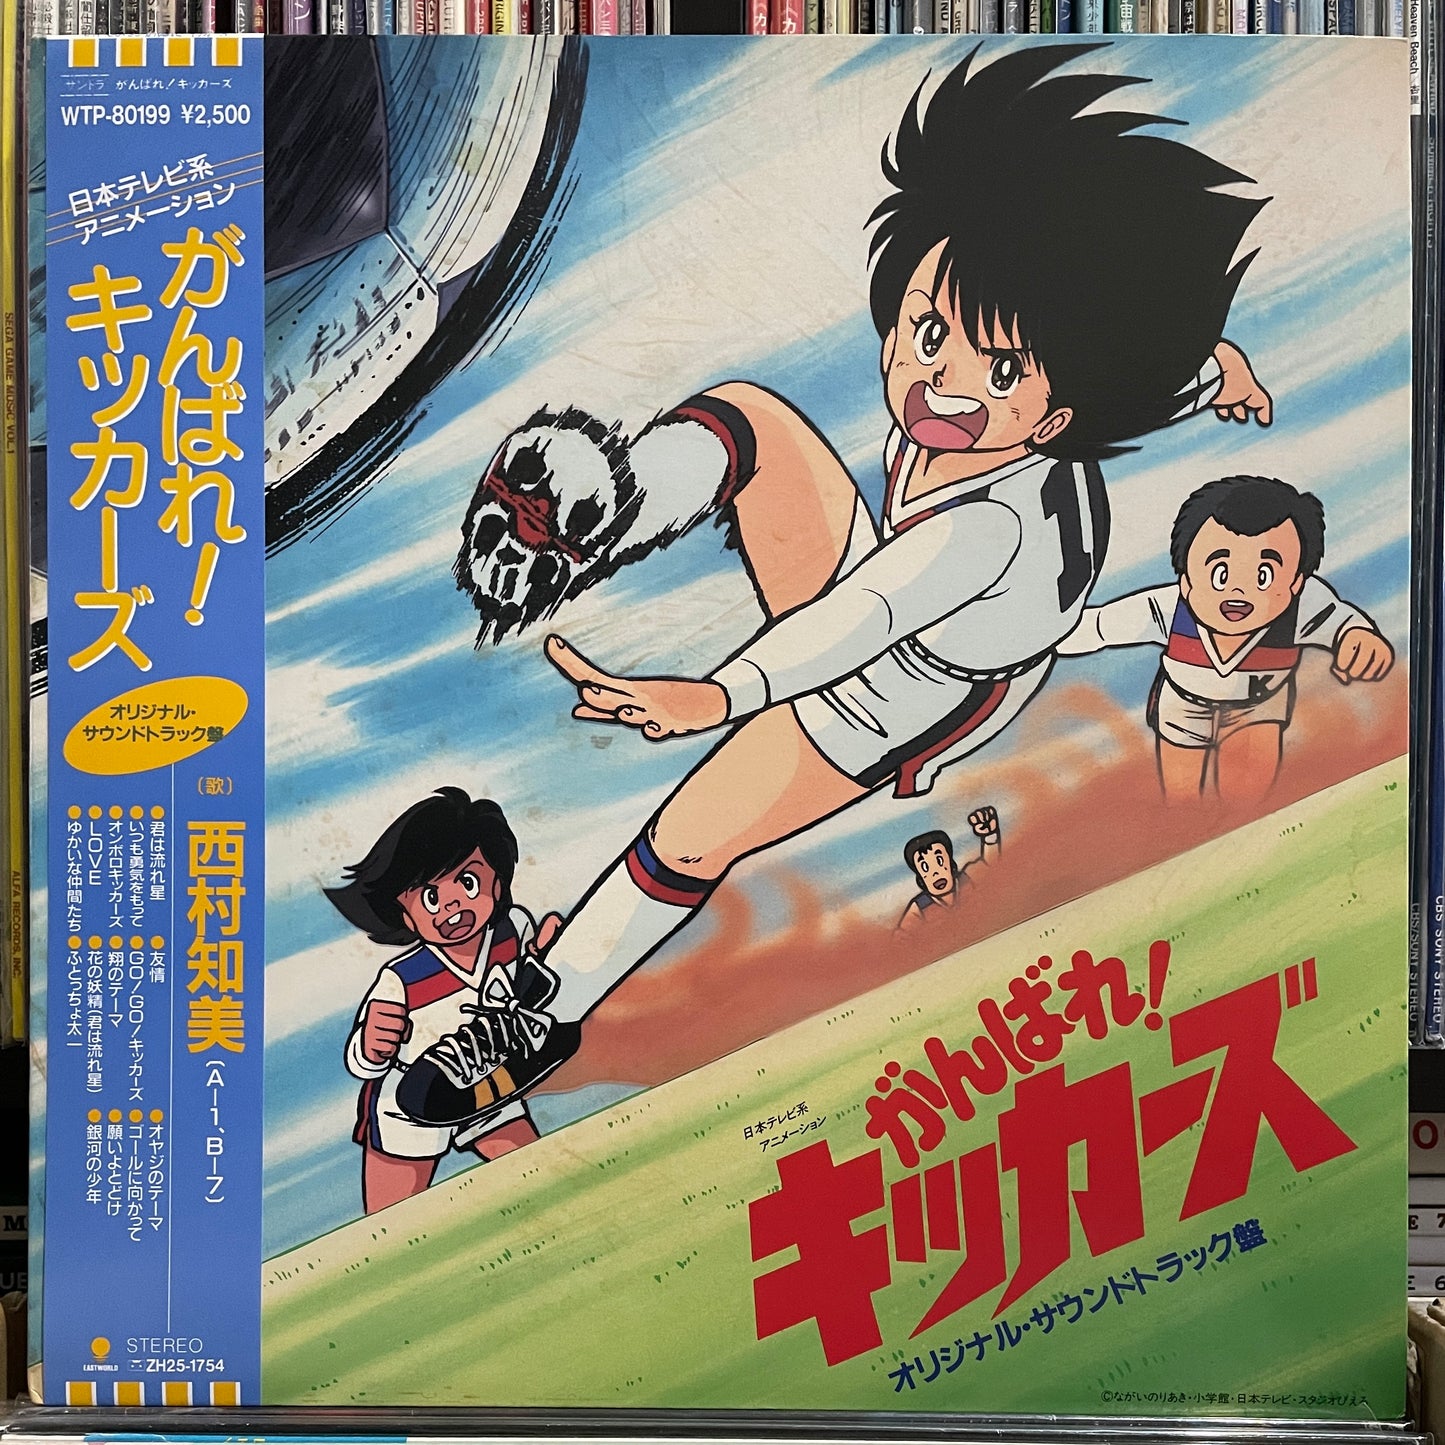 がんばれ!キッカーズ (1986)